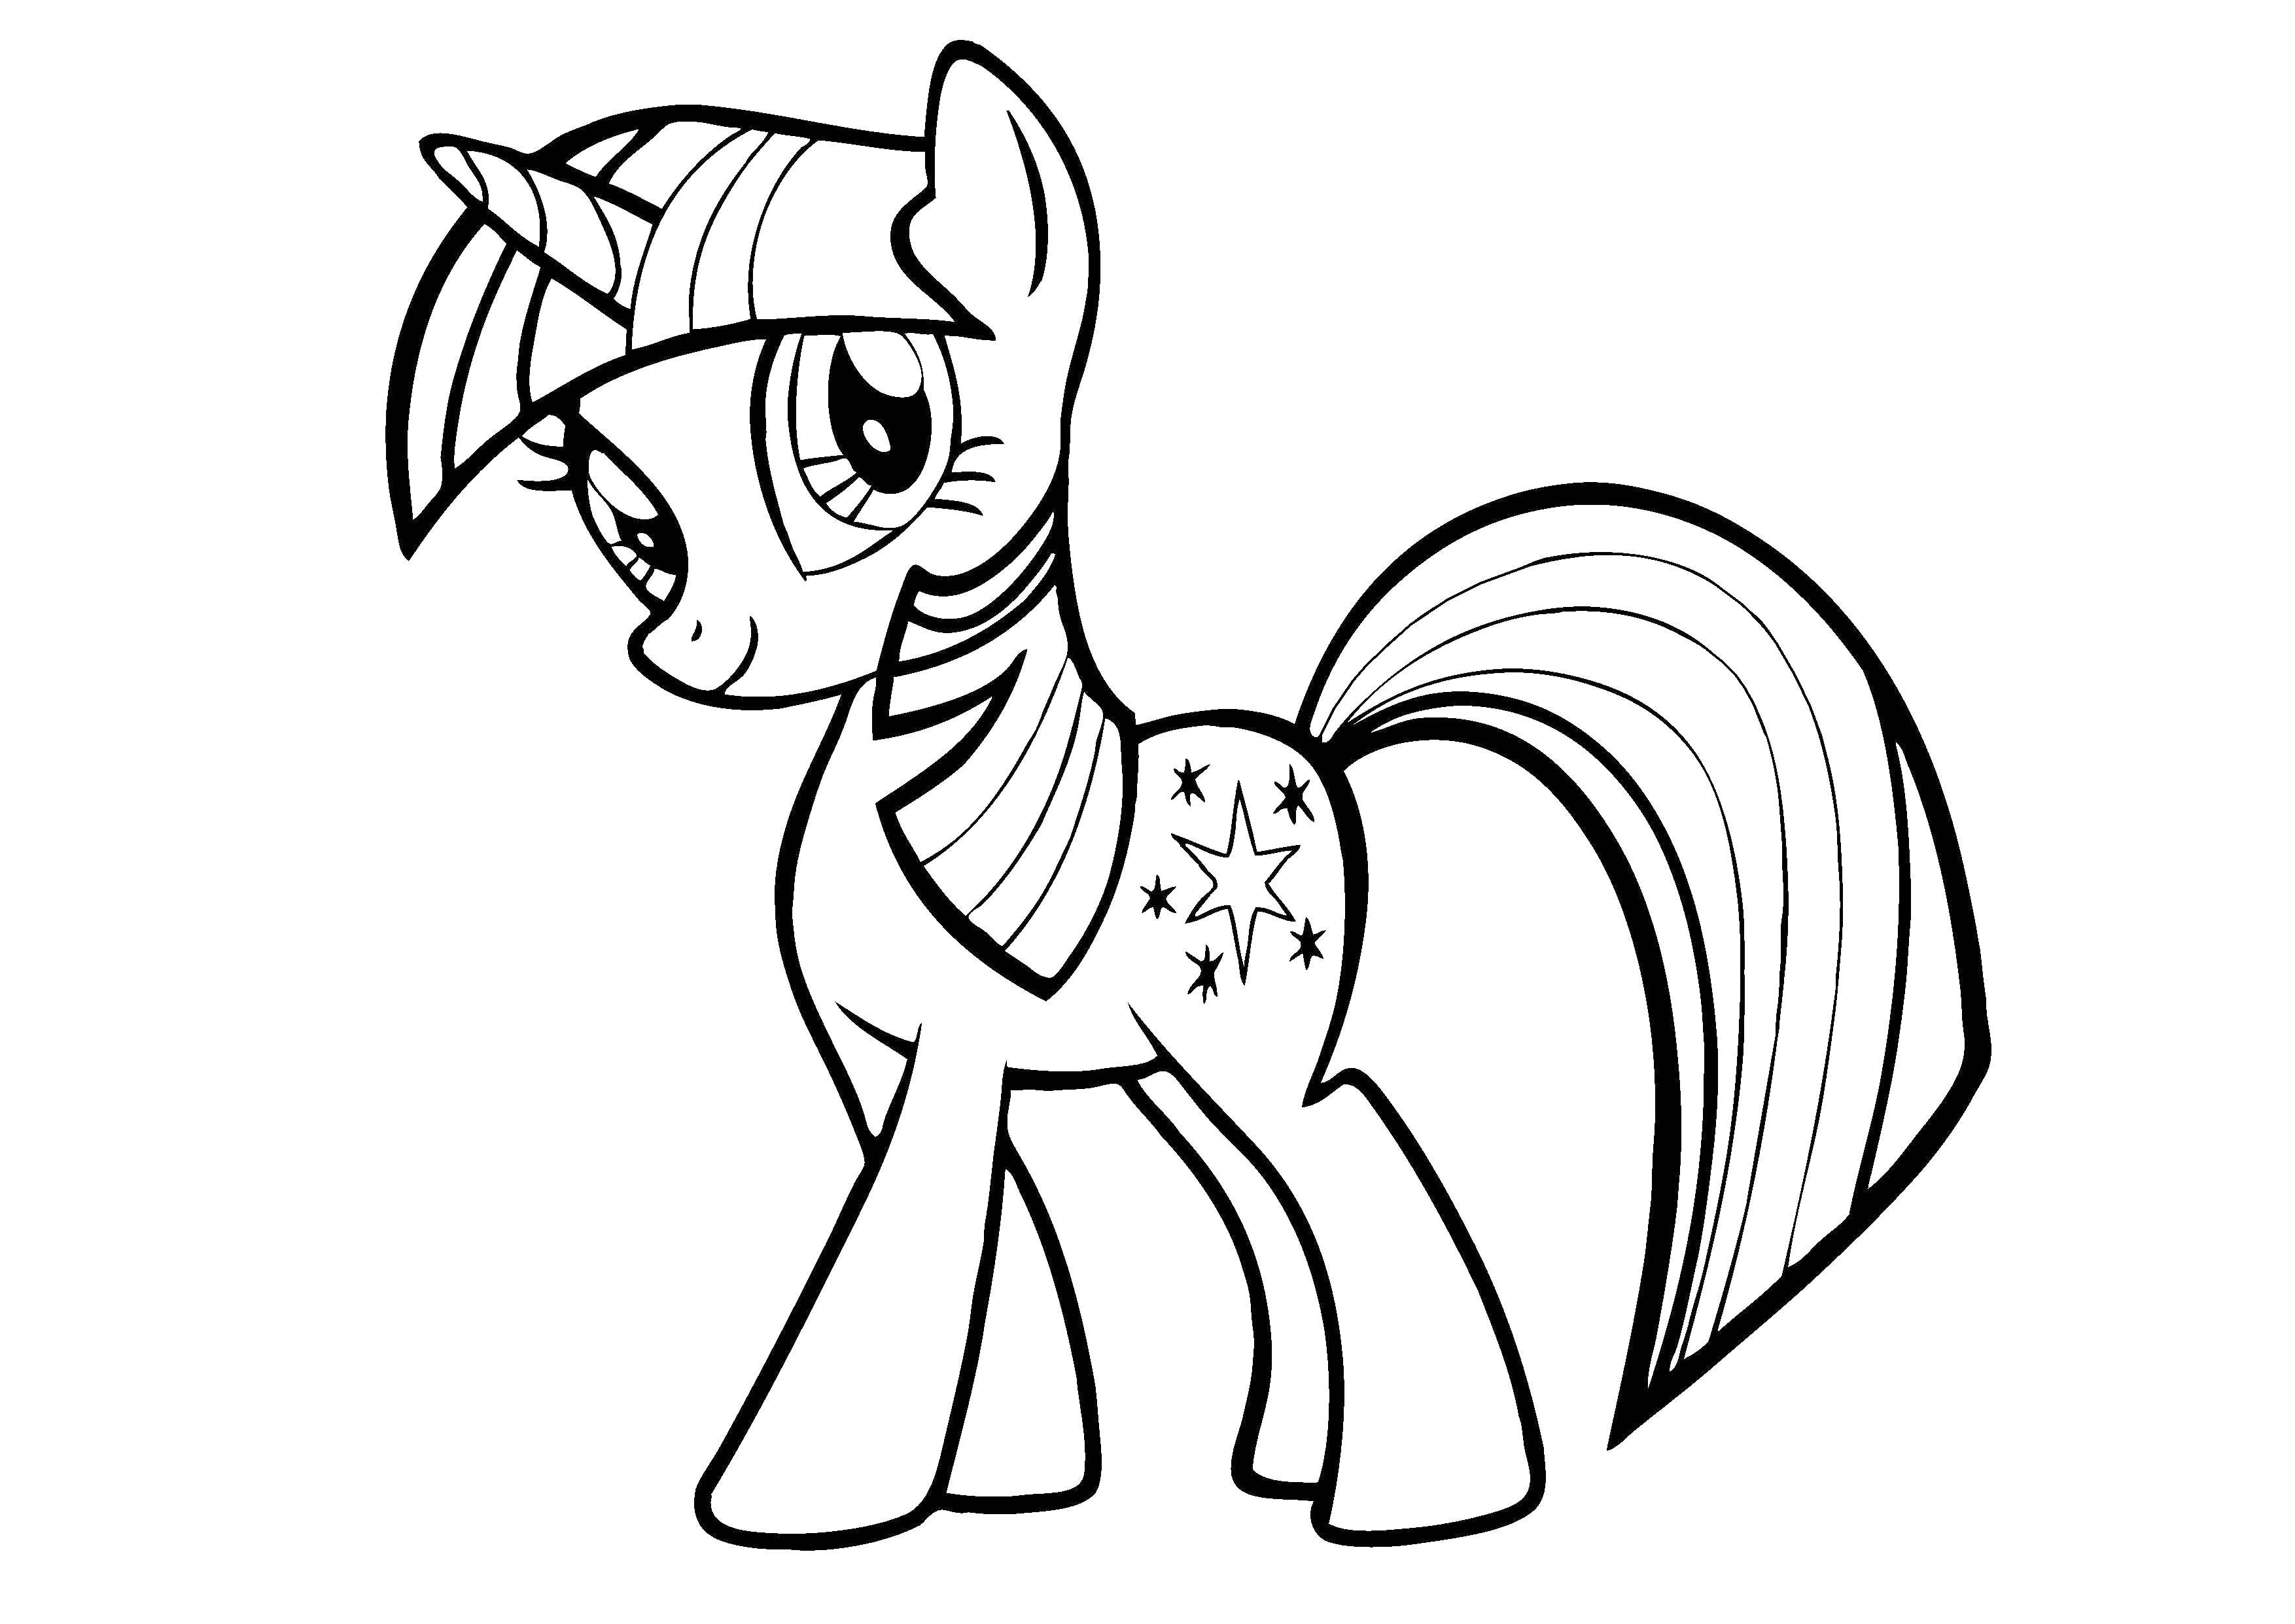 Coloring Princess sparkle pony. Category my little pony. Tags:  my little pony, Princess Celestia, fluttershy.